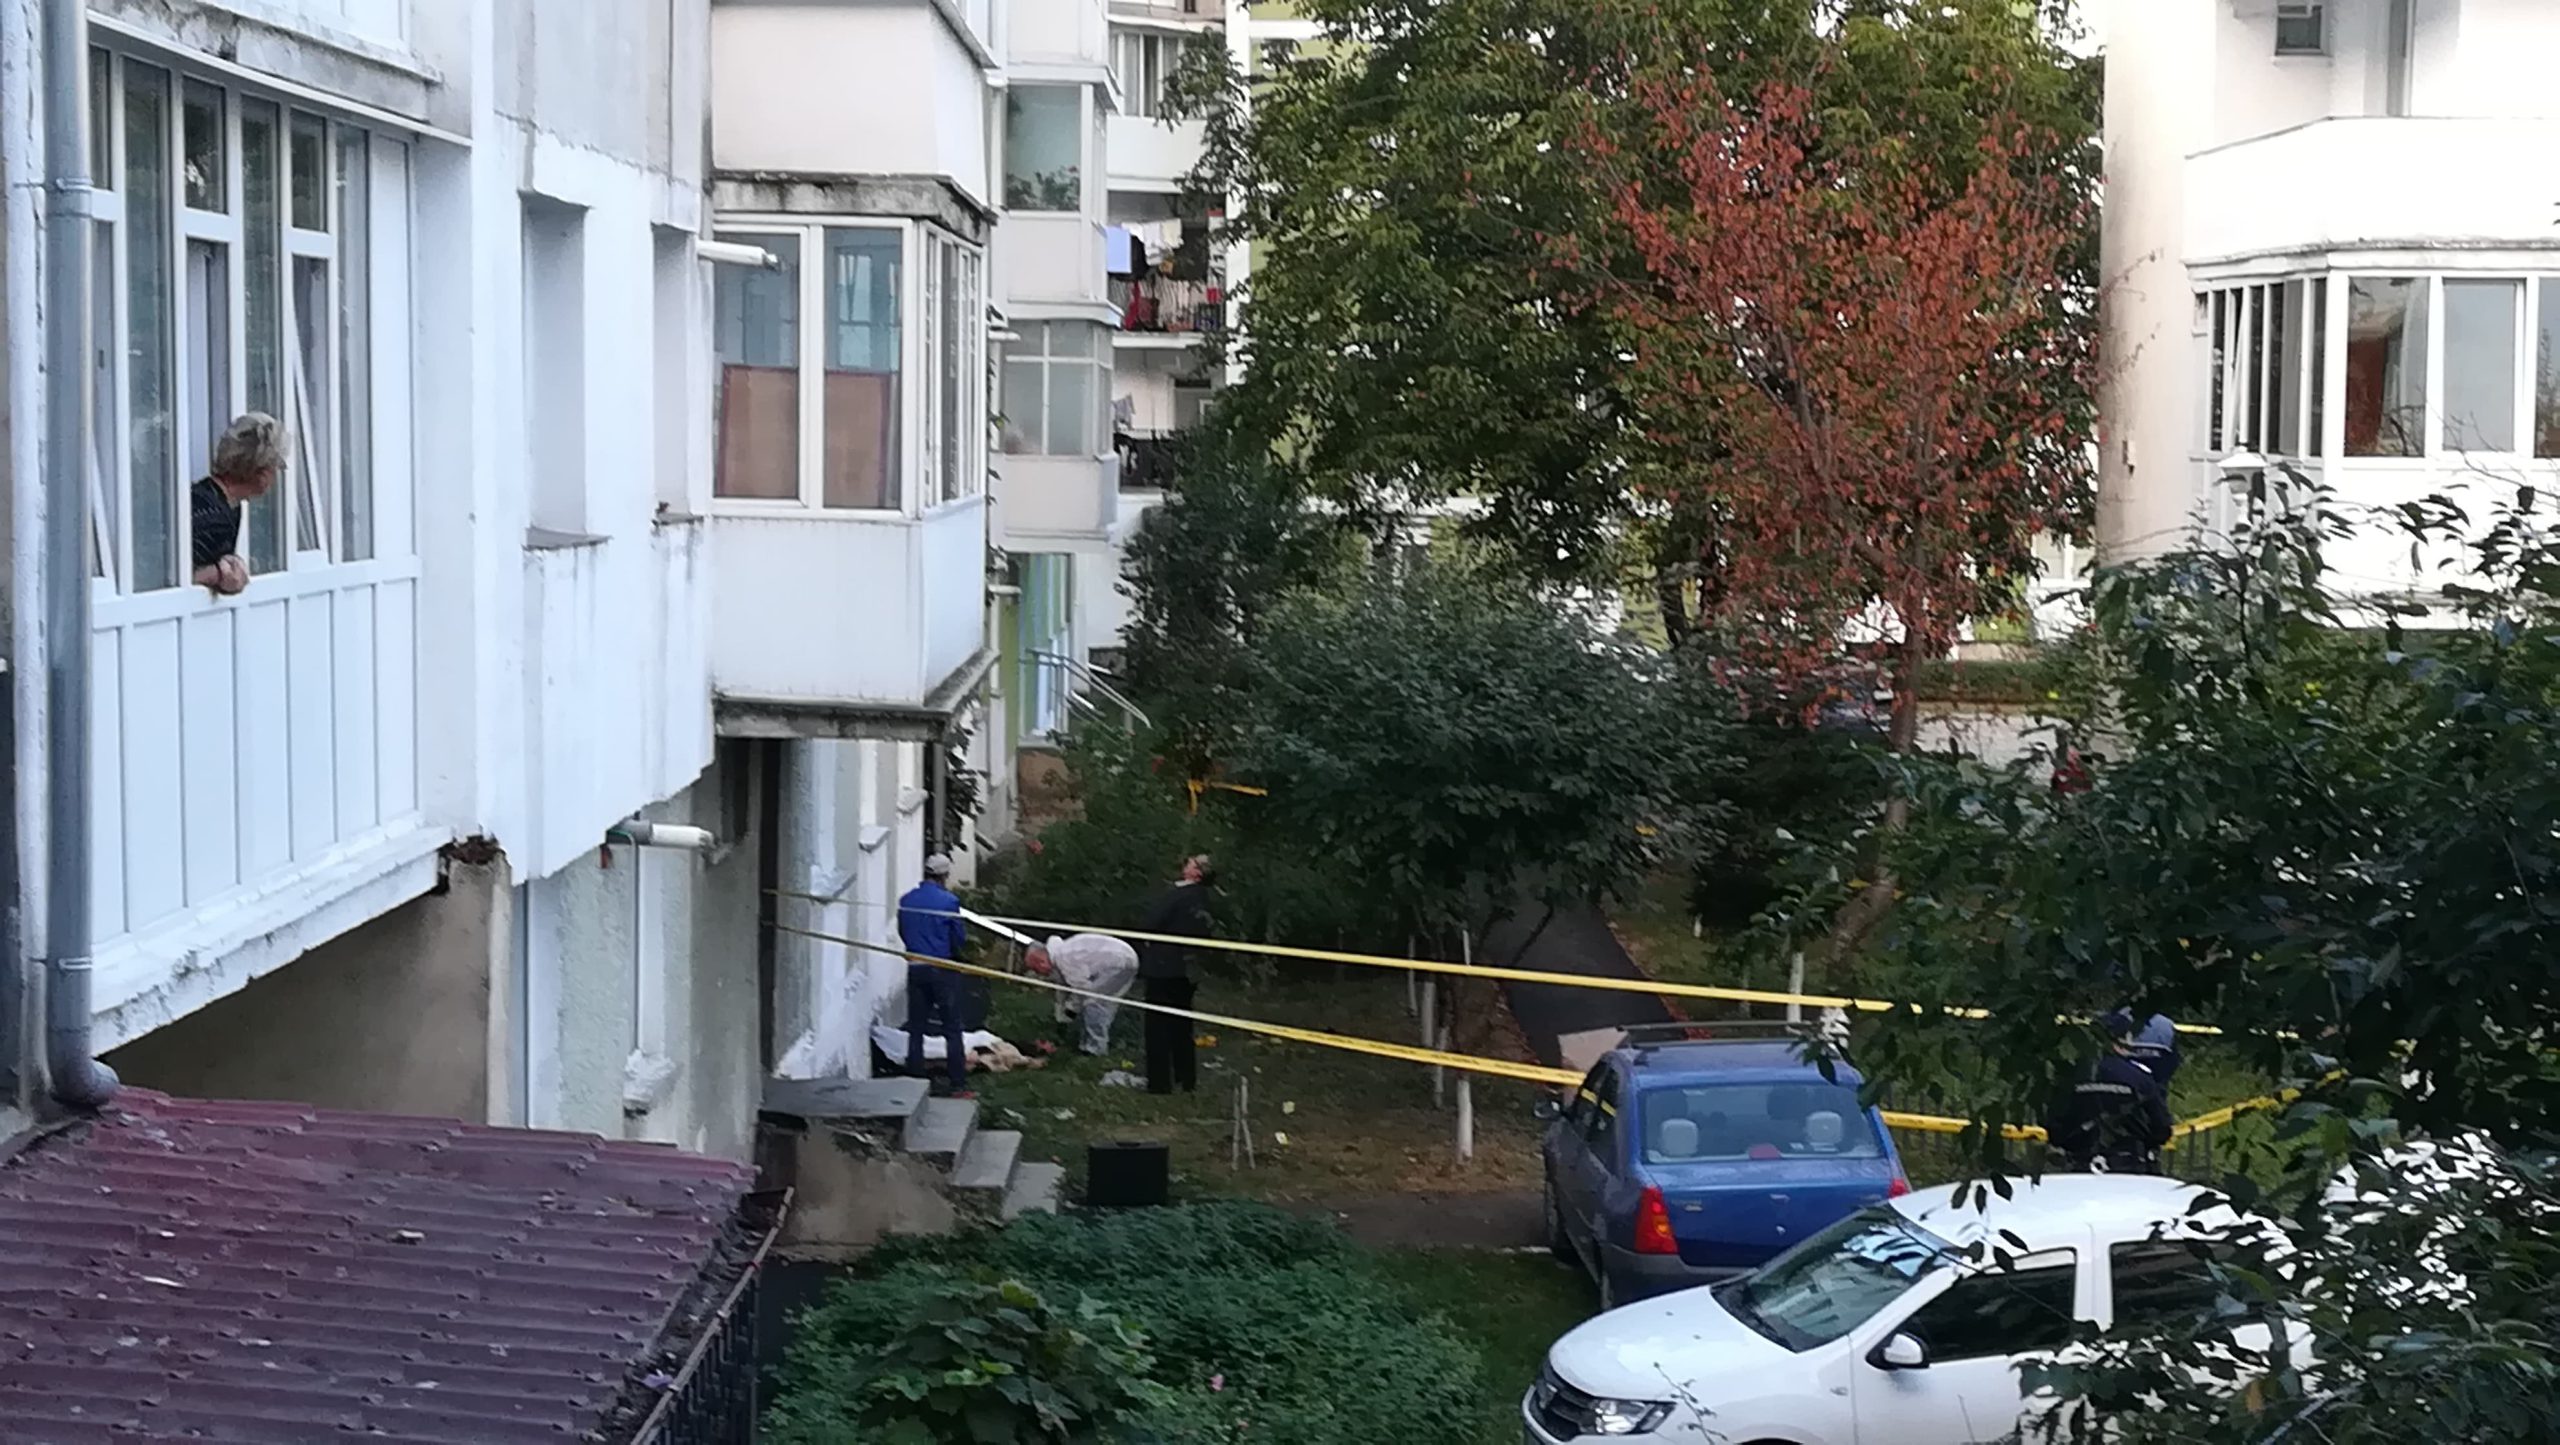  Neamţ: A murit după ce şi-a uitat cheia şi a încercat să intre în apartament prin balcon